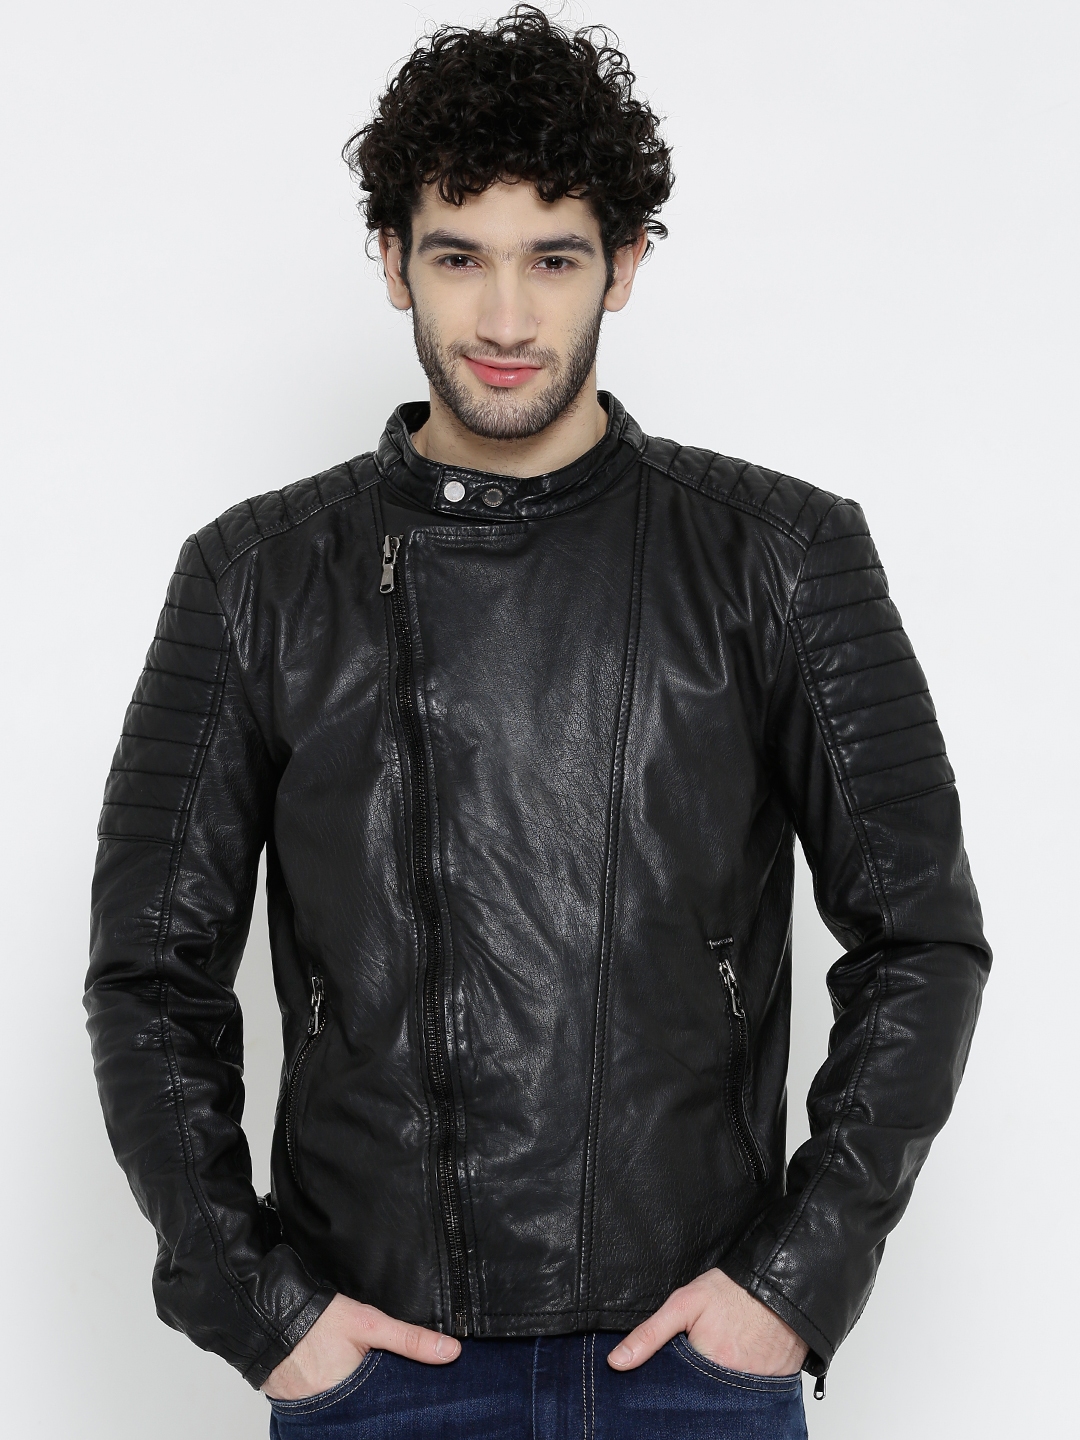 Buy BARESKIN Black Leather Biker Jacket - Jackets for Men 1139701 | Myntra